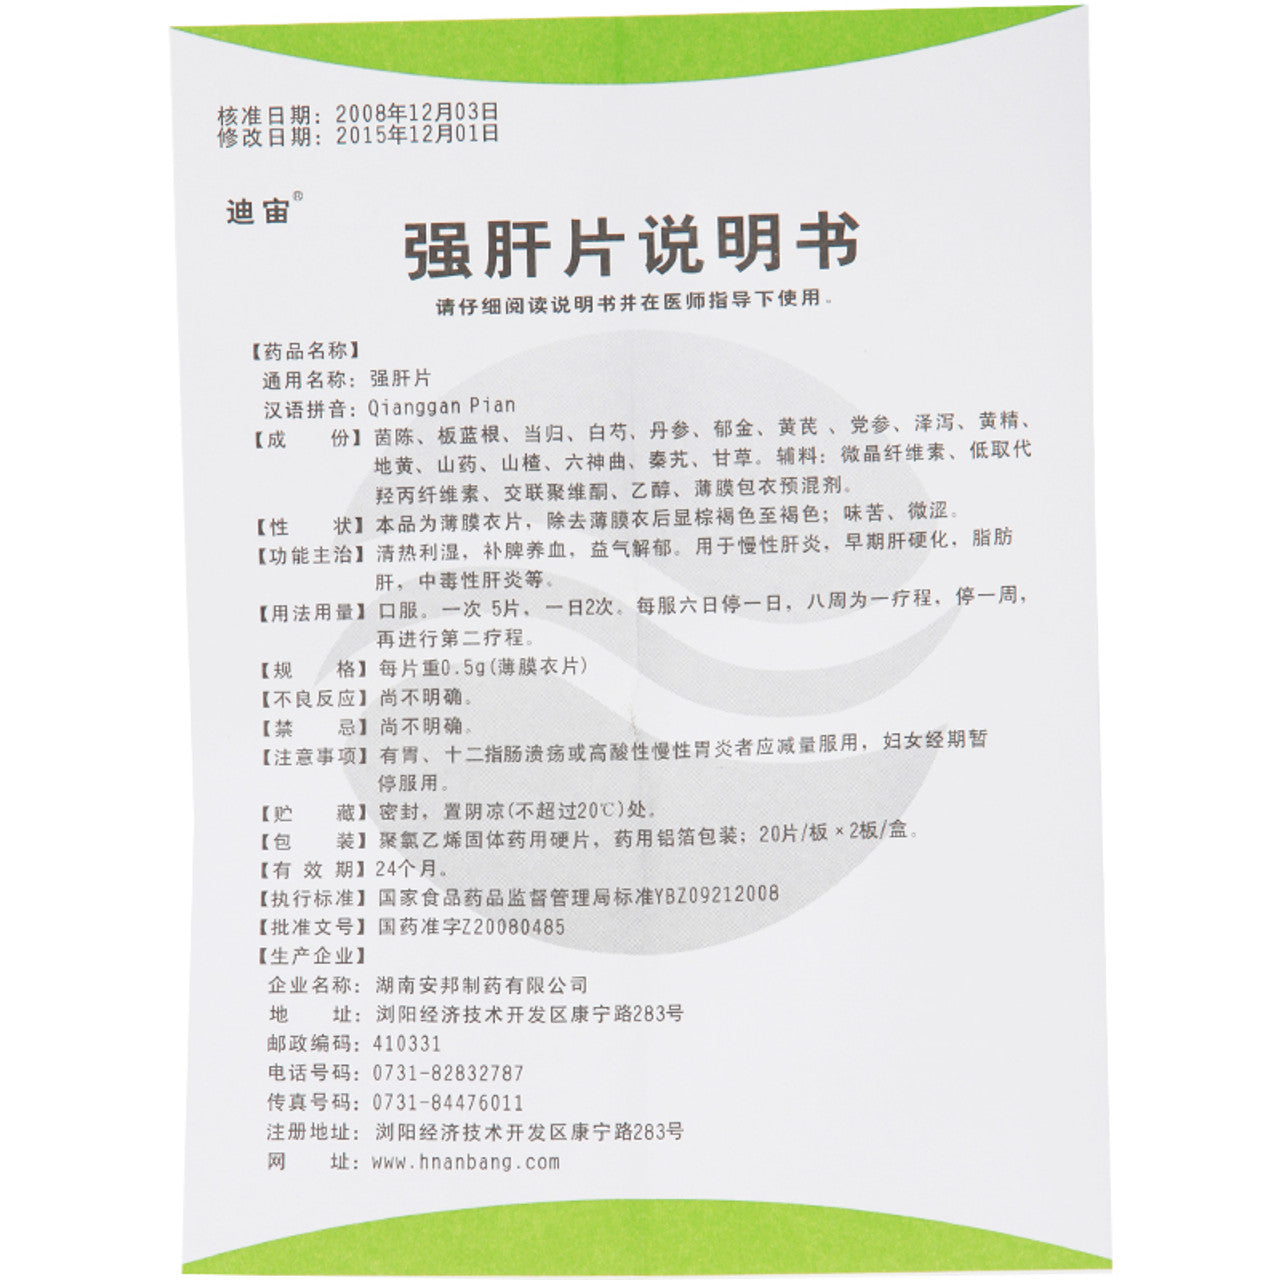 China Herb. Qianggan Pian or Qianggan Tablets for chronic hepatitis, early cirrhosis, fatty liver, toxic hepatitis, etc. Qiang Gan Pian